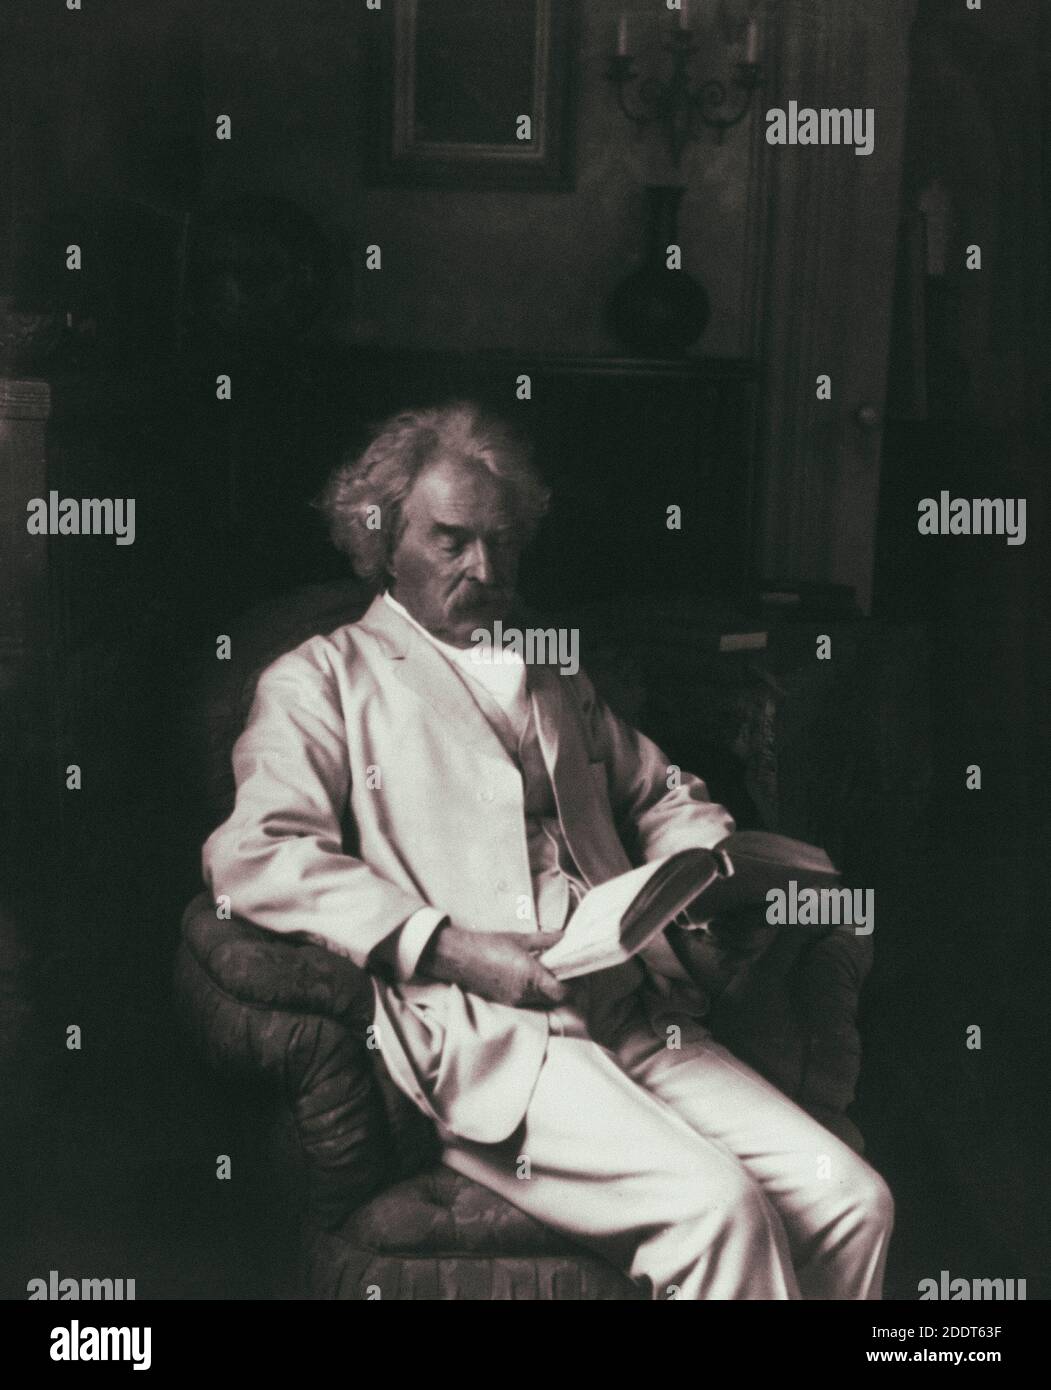 Retro-Foto von Mark Twain Samuel Langhorne Clemens (1835 – 1910), bekannt unter seinem Künstlernamen Mark Twain, war ein amerikanischer Schriftsteller, Humorist, Unternehmer, pu Stockfoto